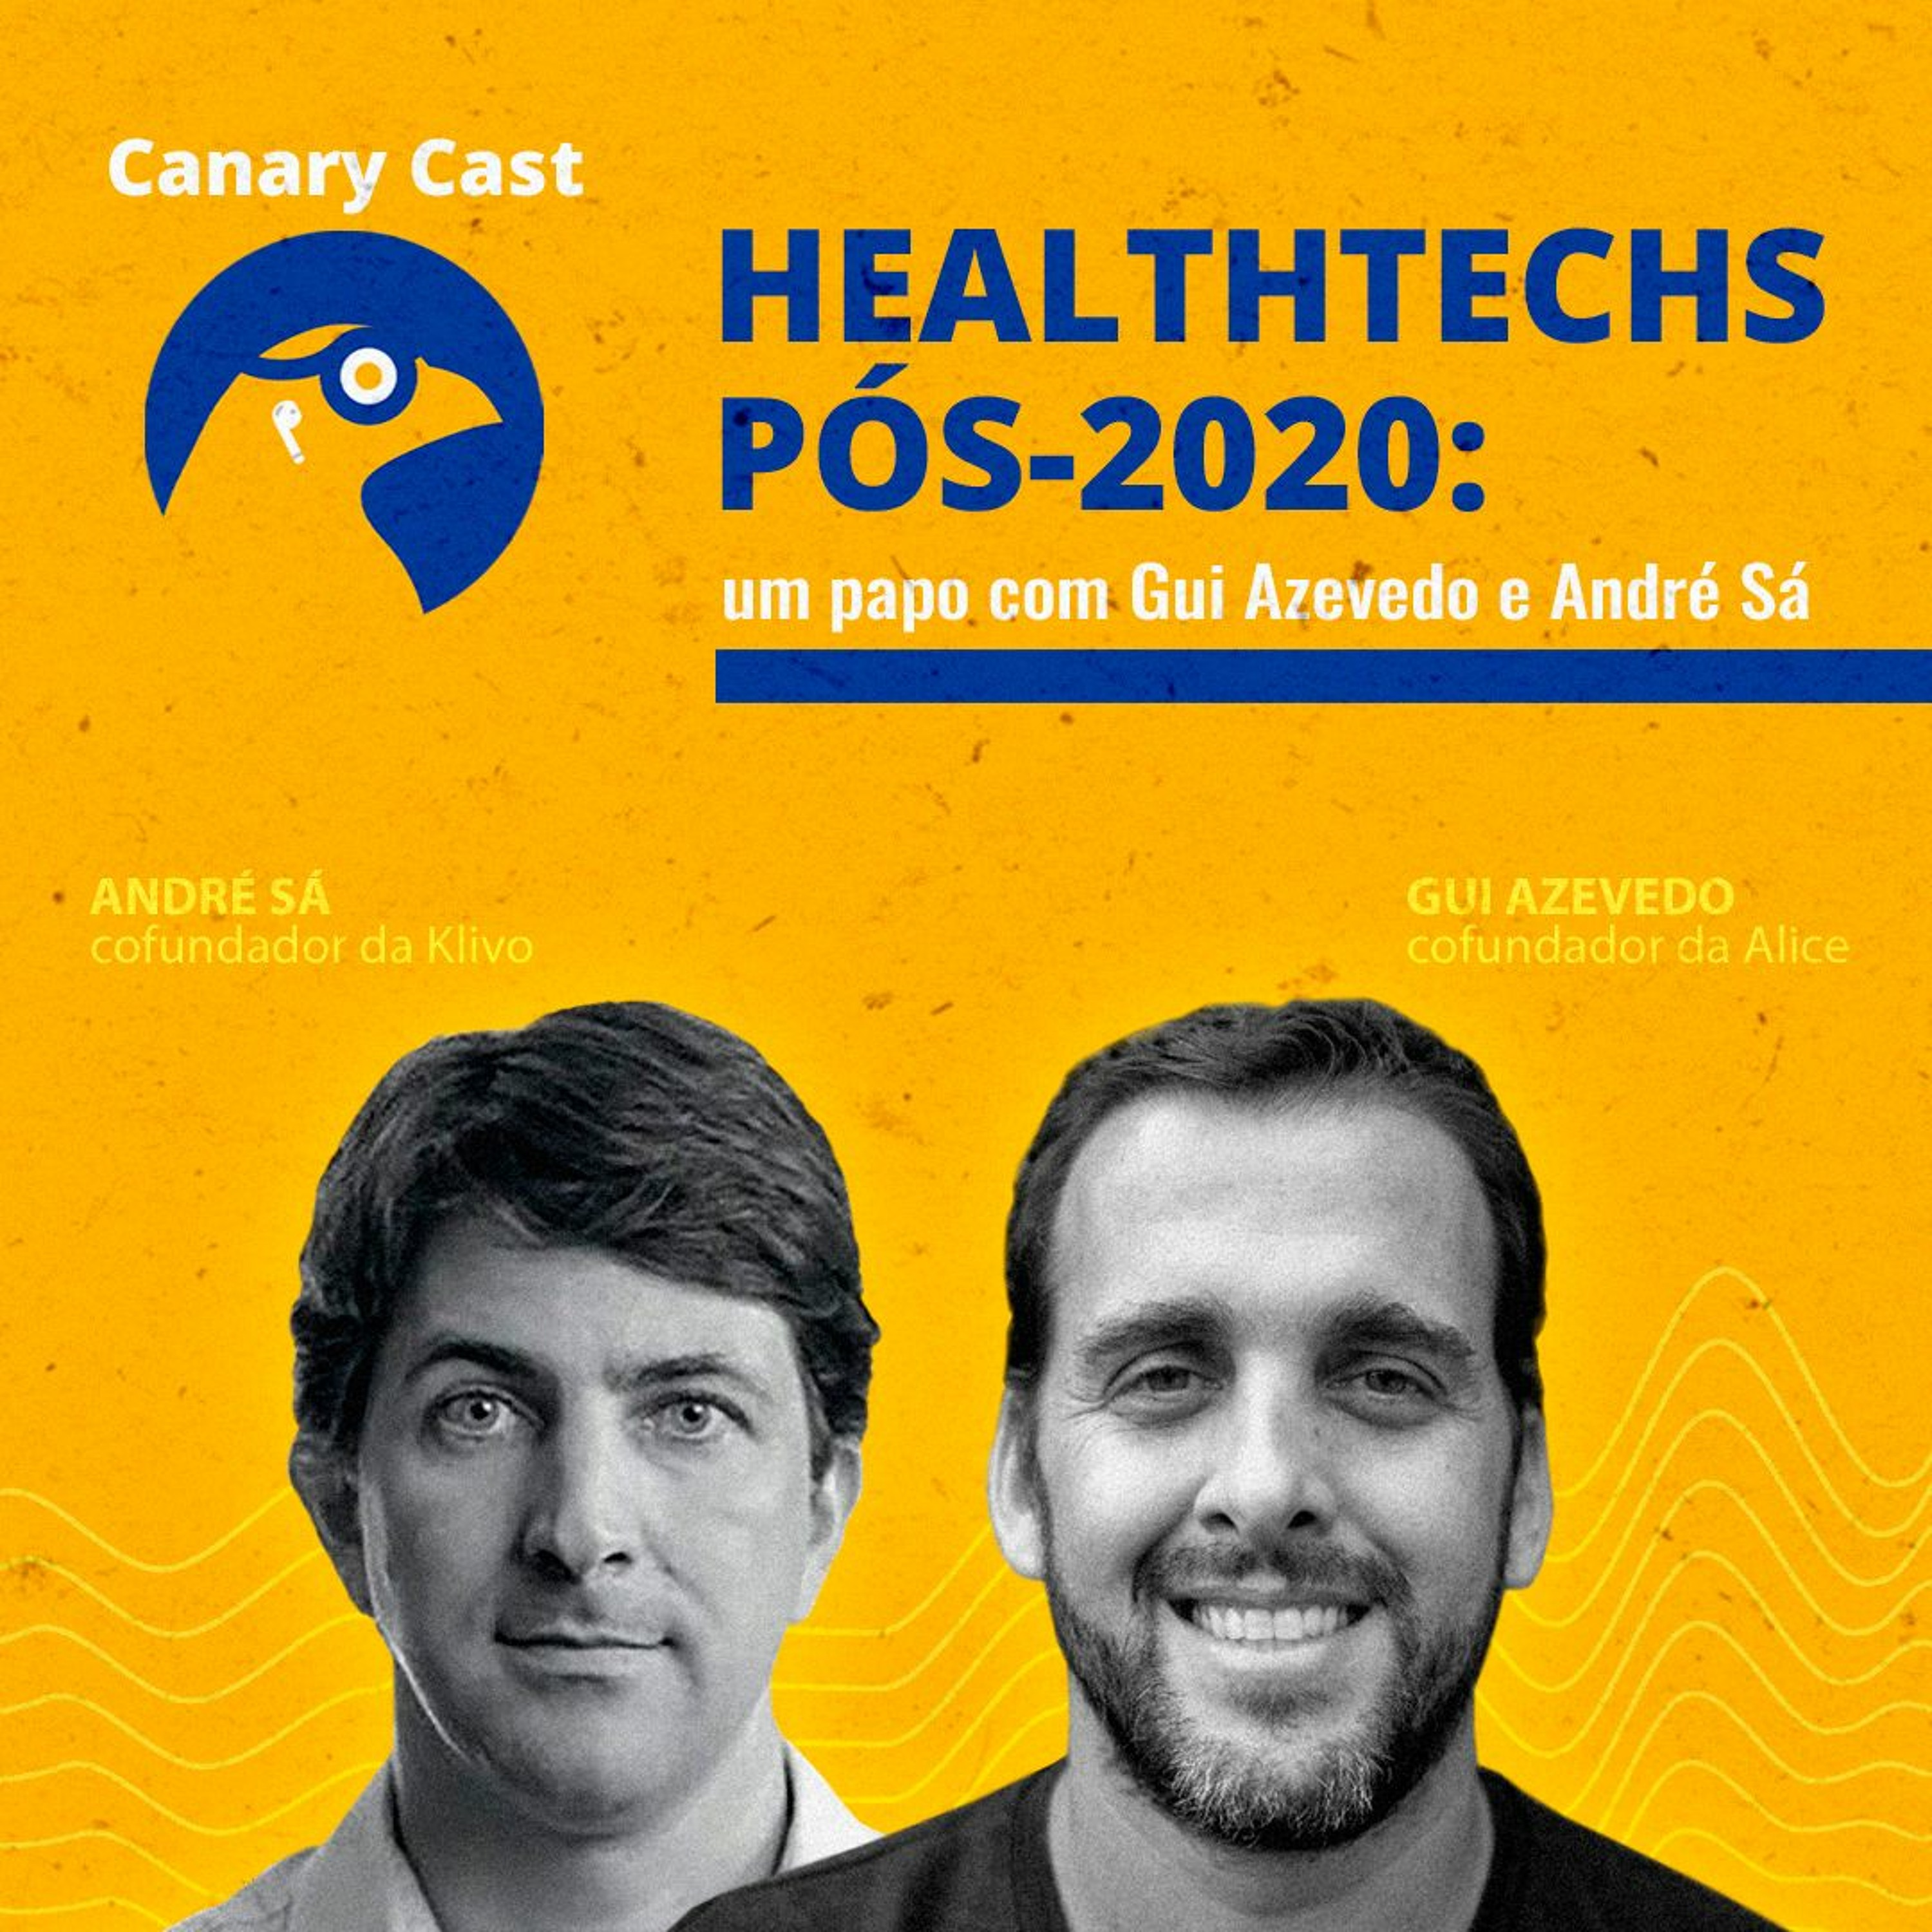 Healthtechs pós-2020: um papo com Gui Azevedo e André Sá